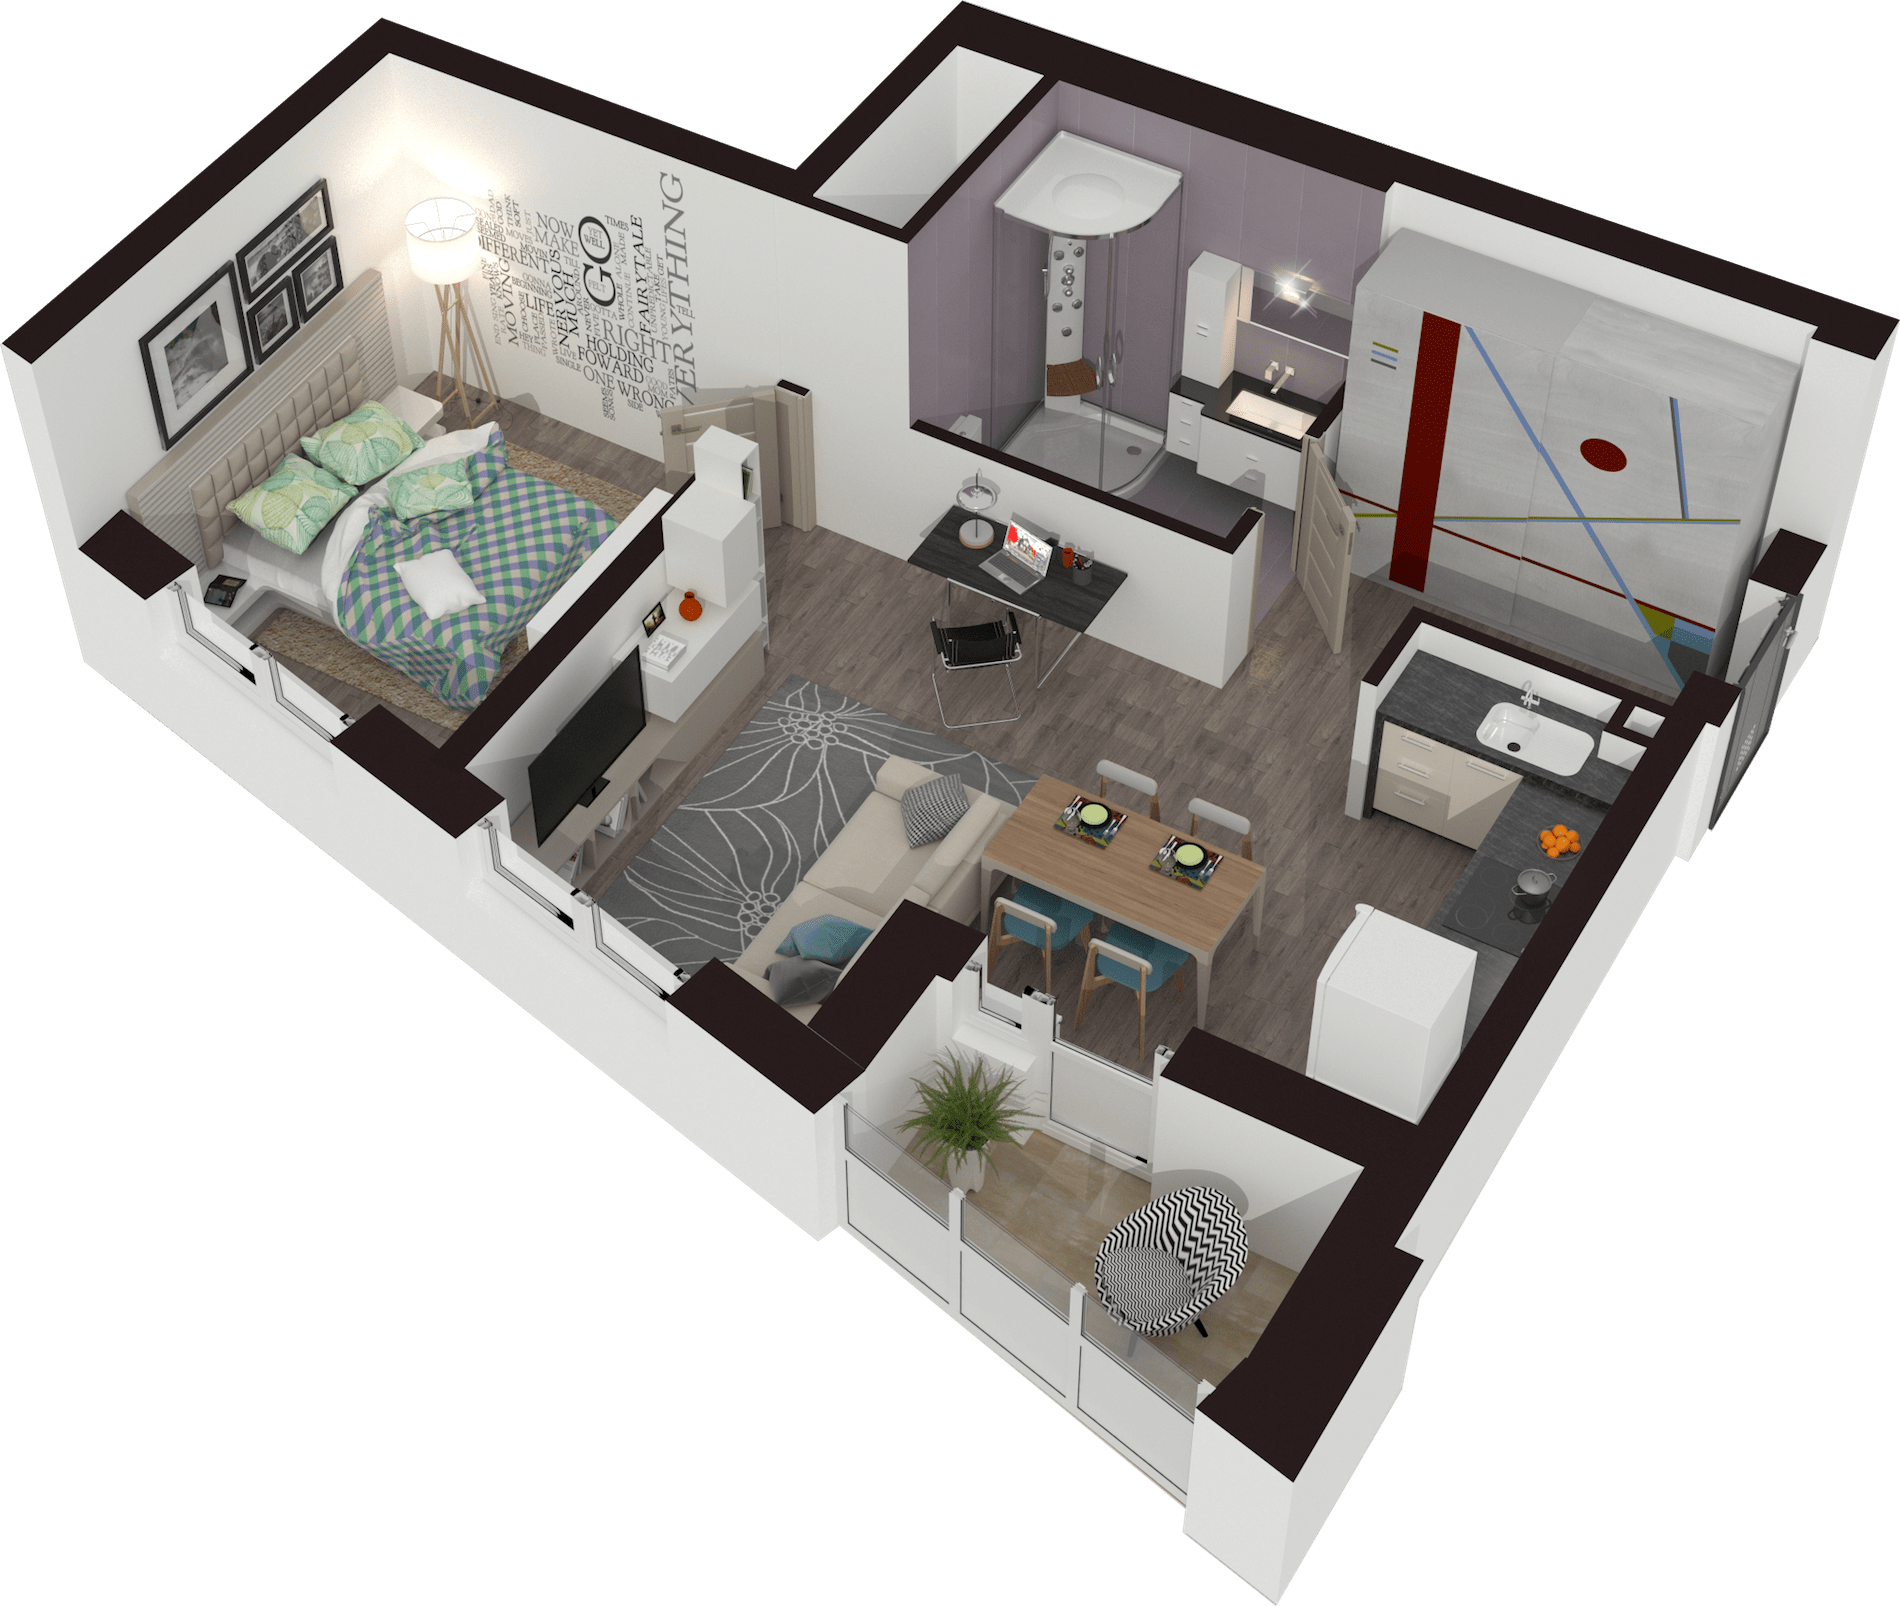 Визуализация планировки квартиры в 3D. Вид сверху. Вебмотор